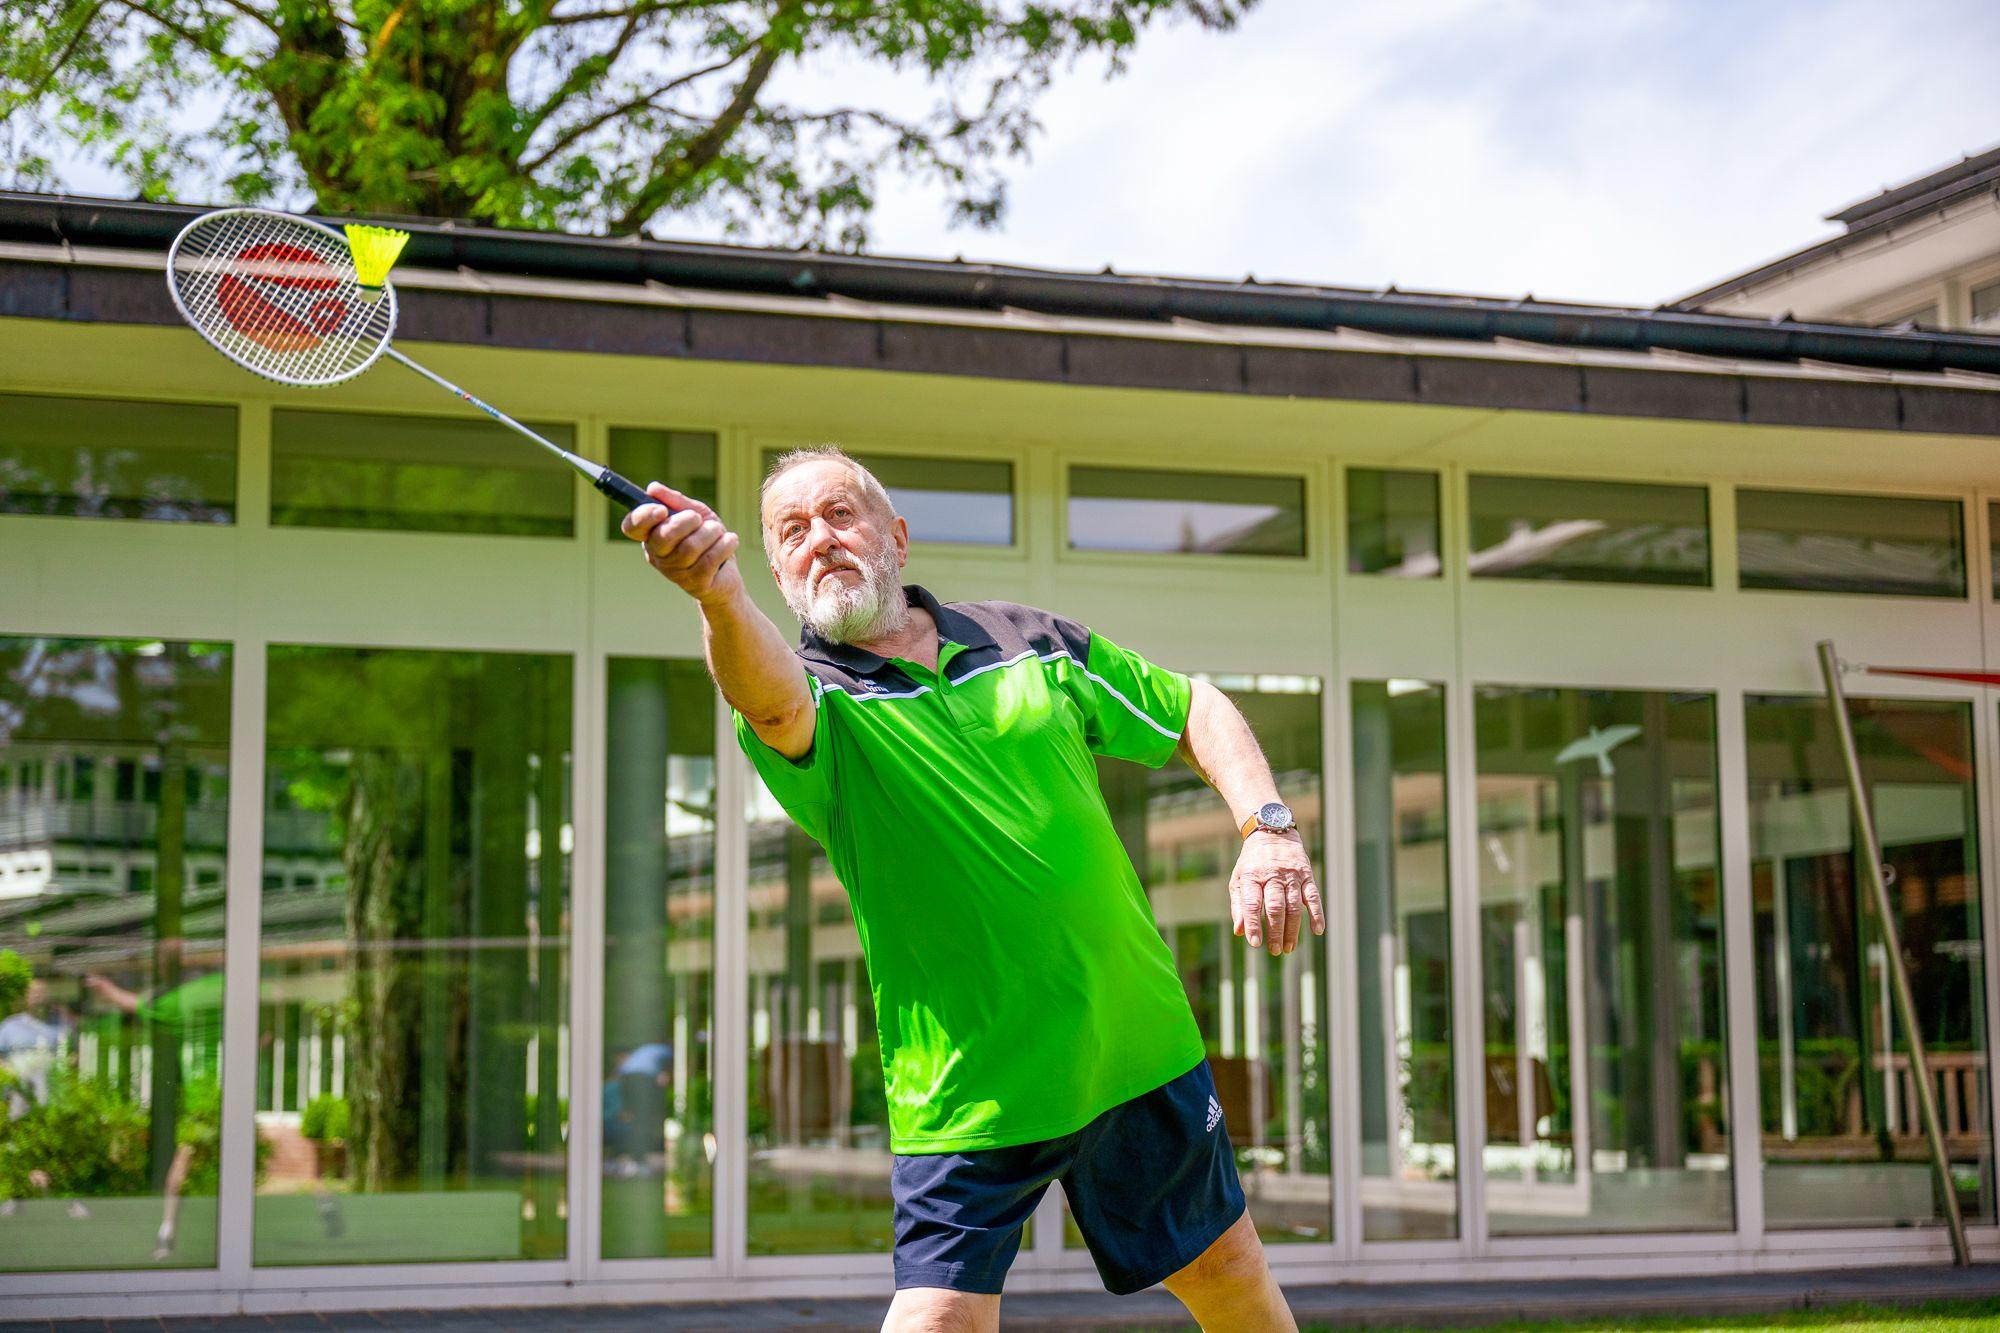 Mann spielt Badminton, im Hintergrund ist die Rehaklinik zu sehen.